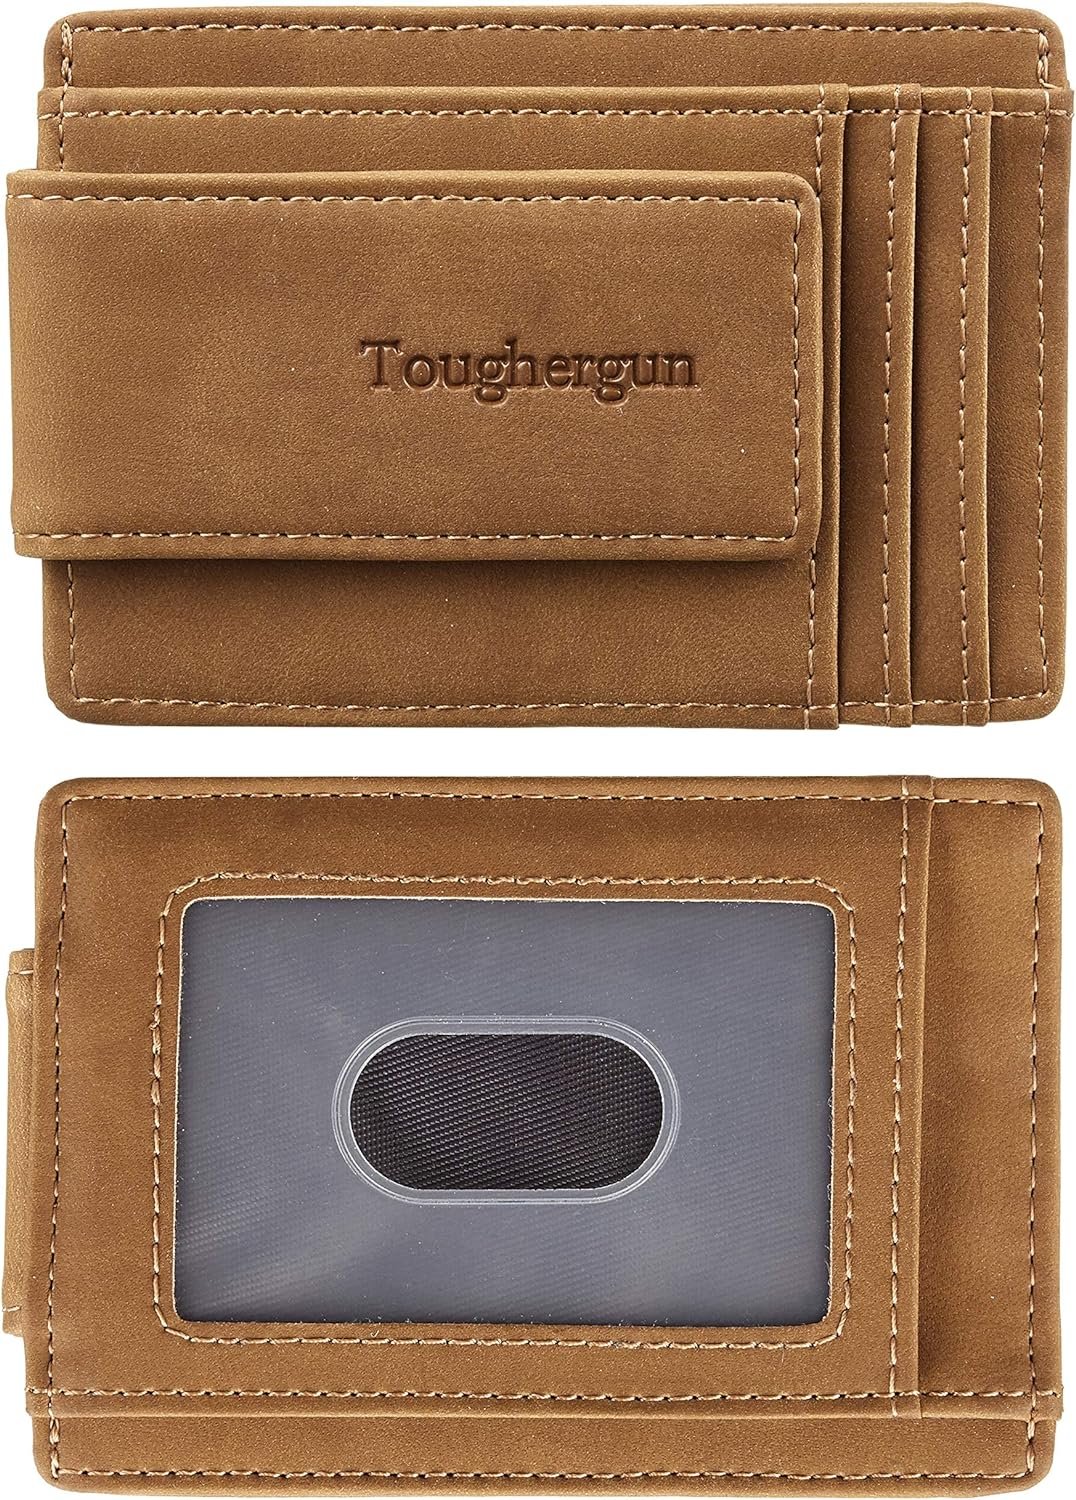 Toughergun Wallet Review